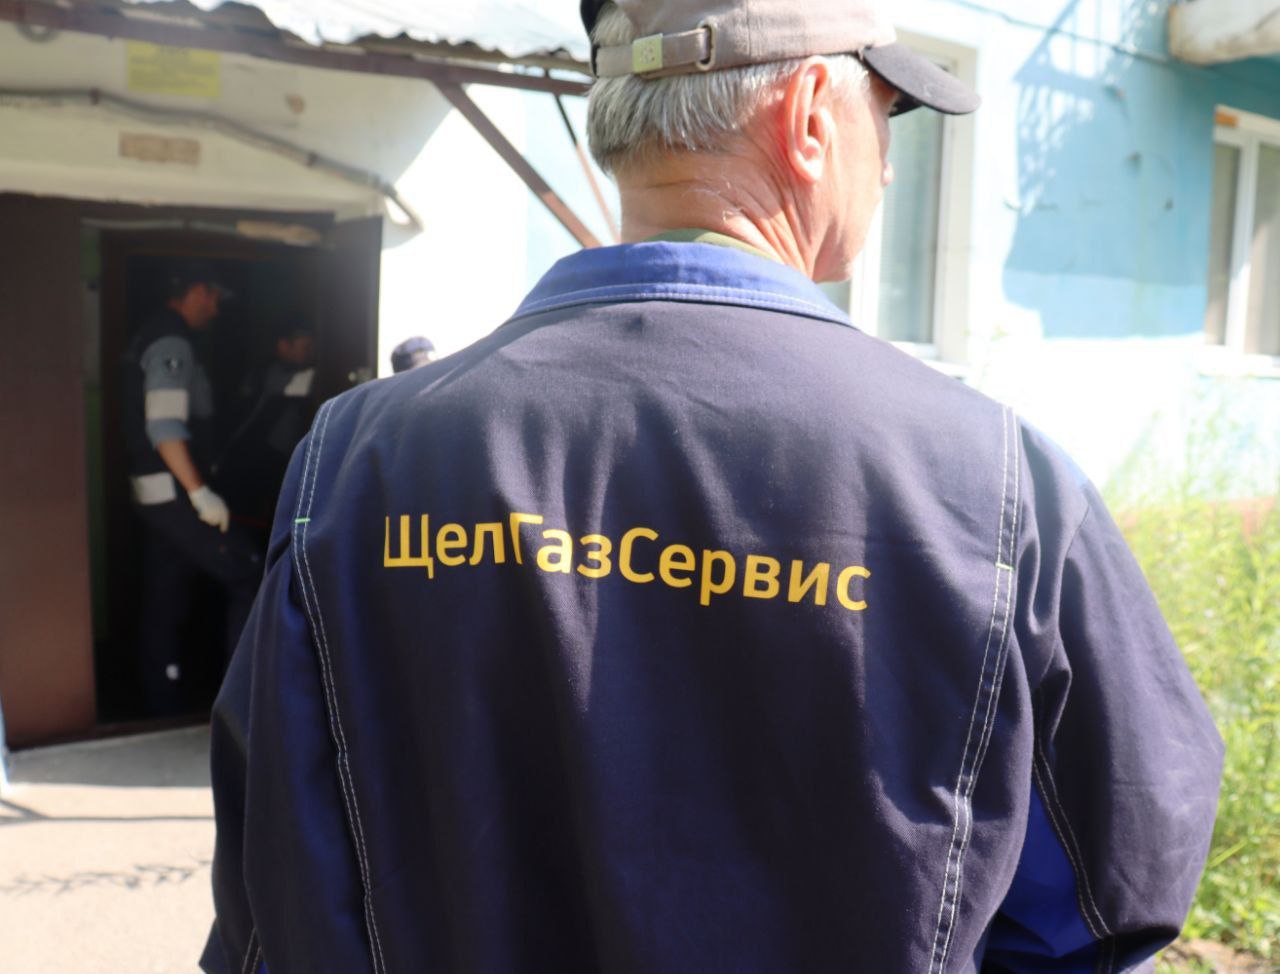 во время ВКС с губернатором Московской области было уделено особое внимание газовой безопасности